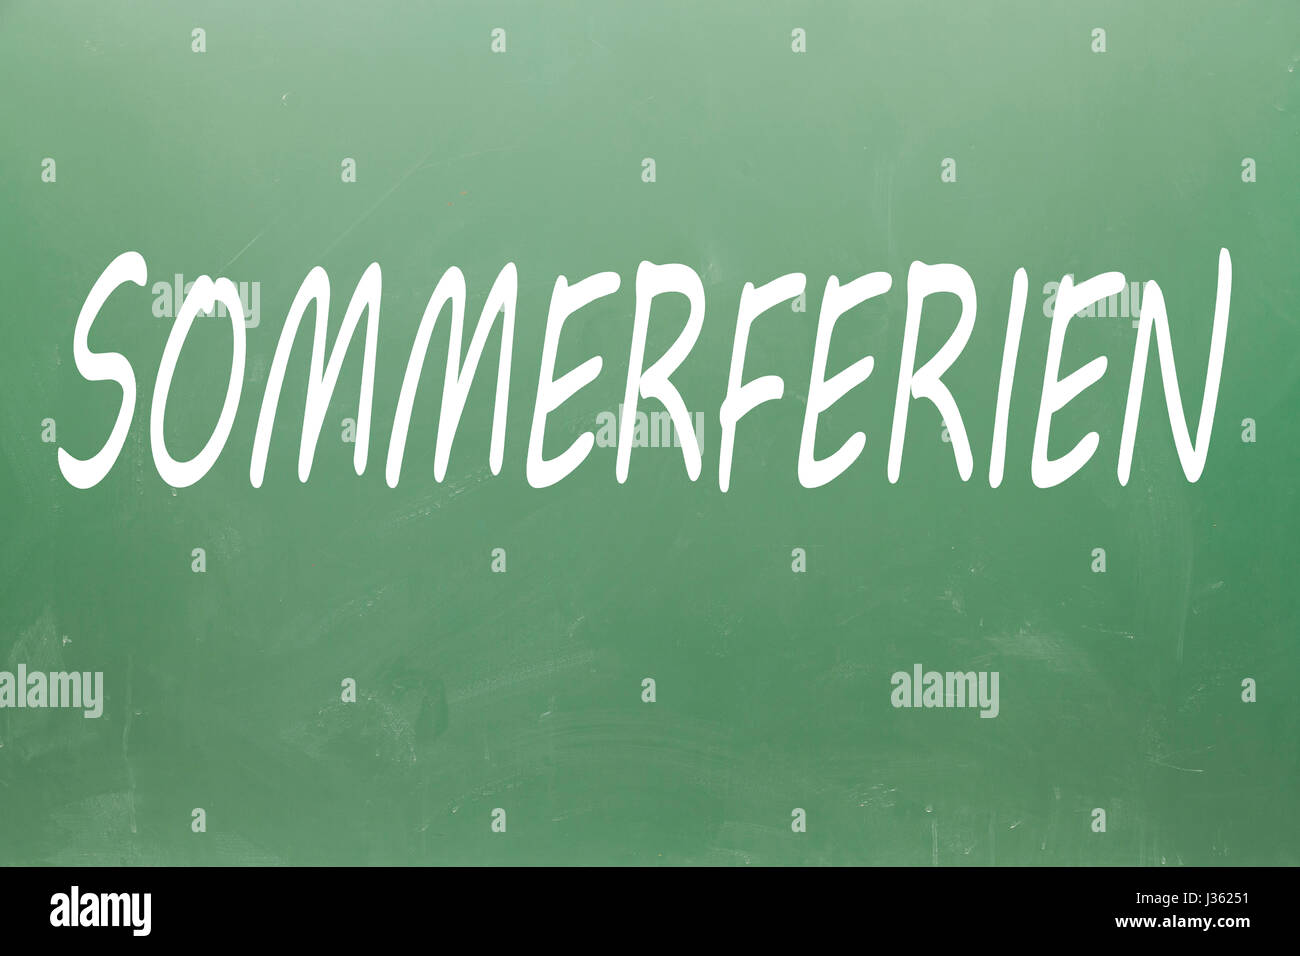 Sommerferien (summer holidays in german) written on blackboard Stock Photo